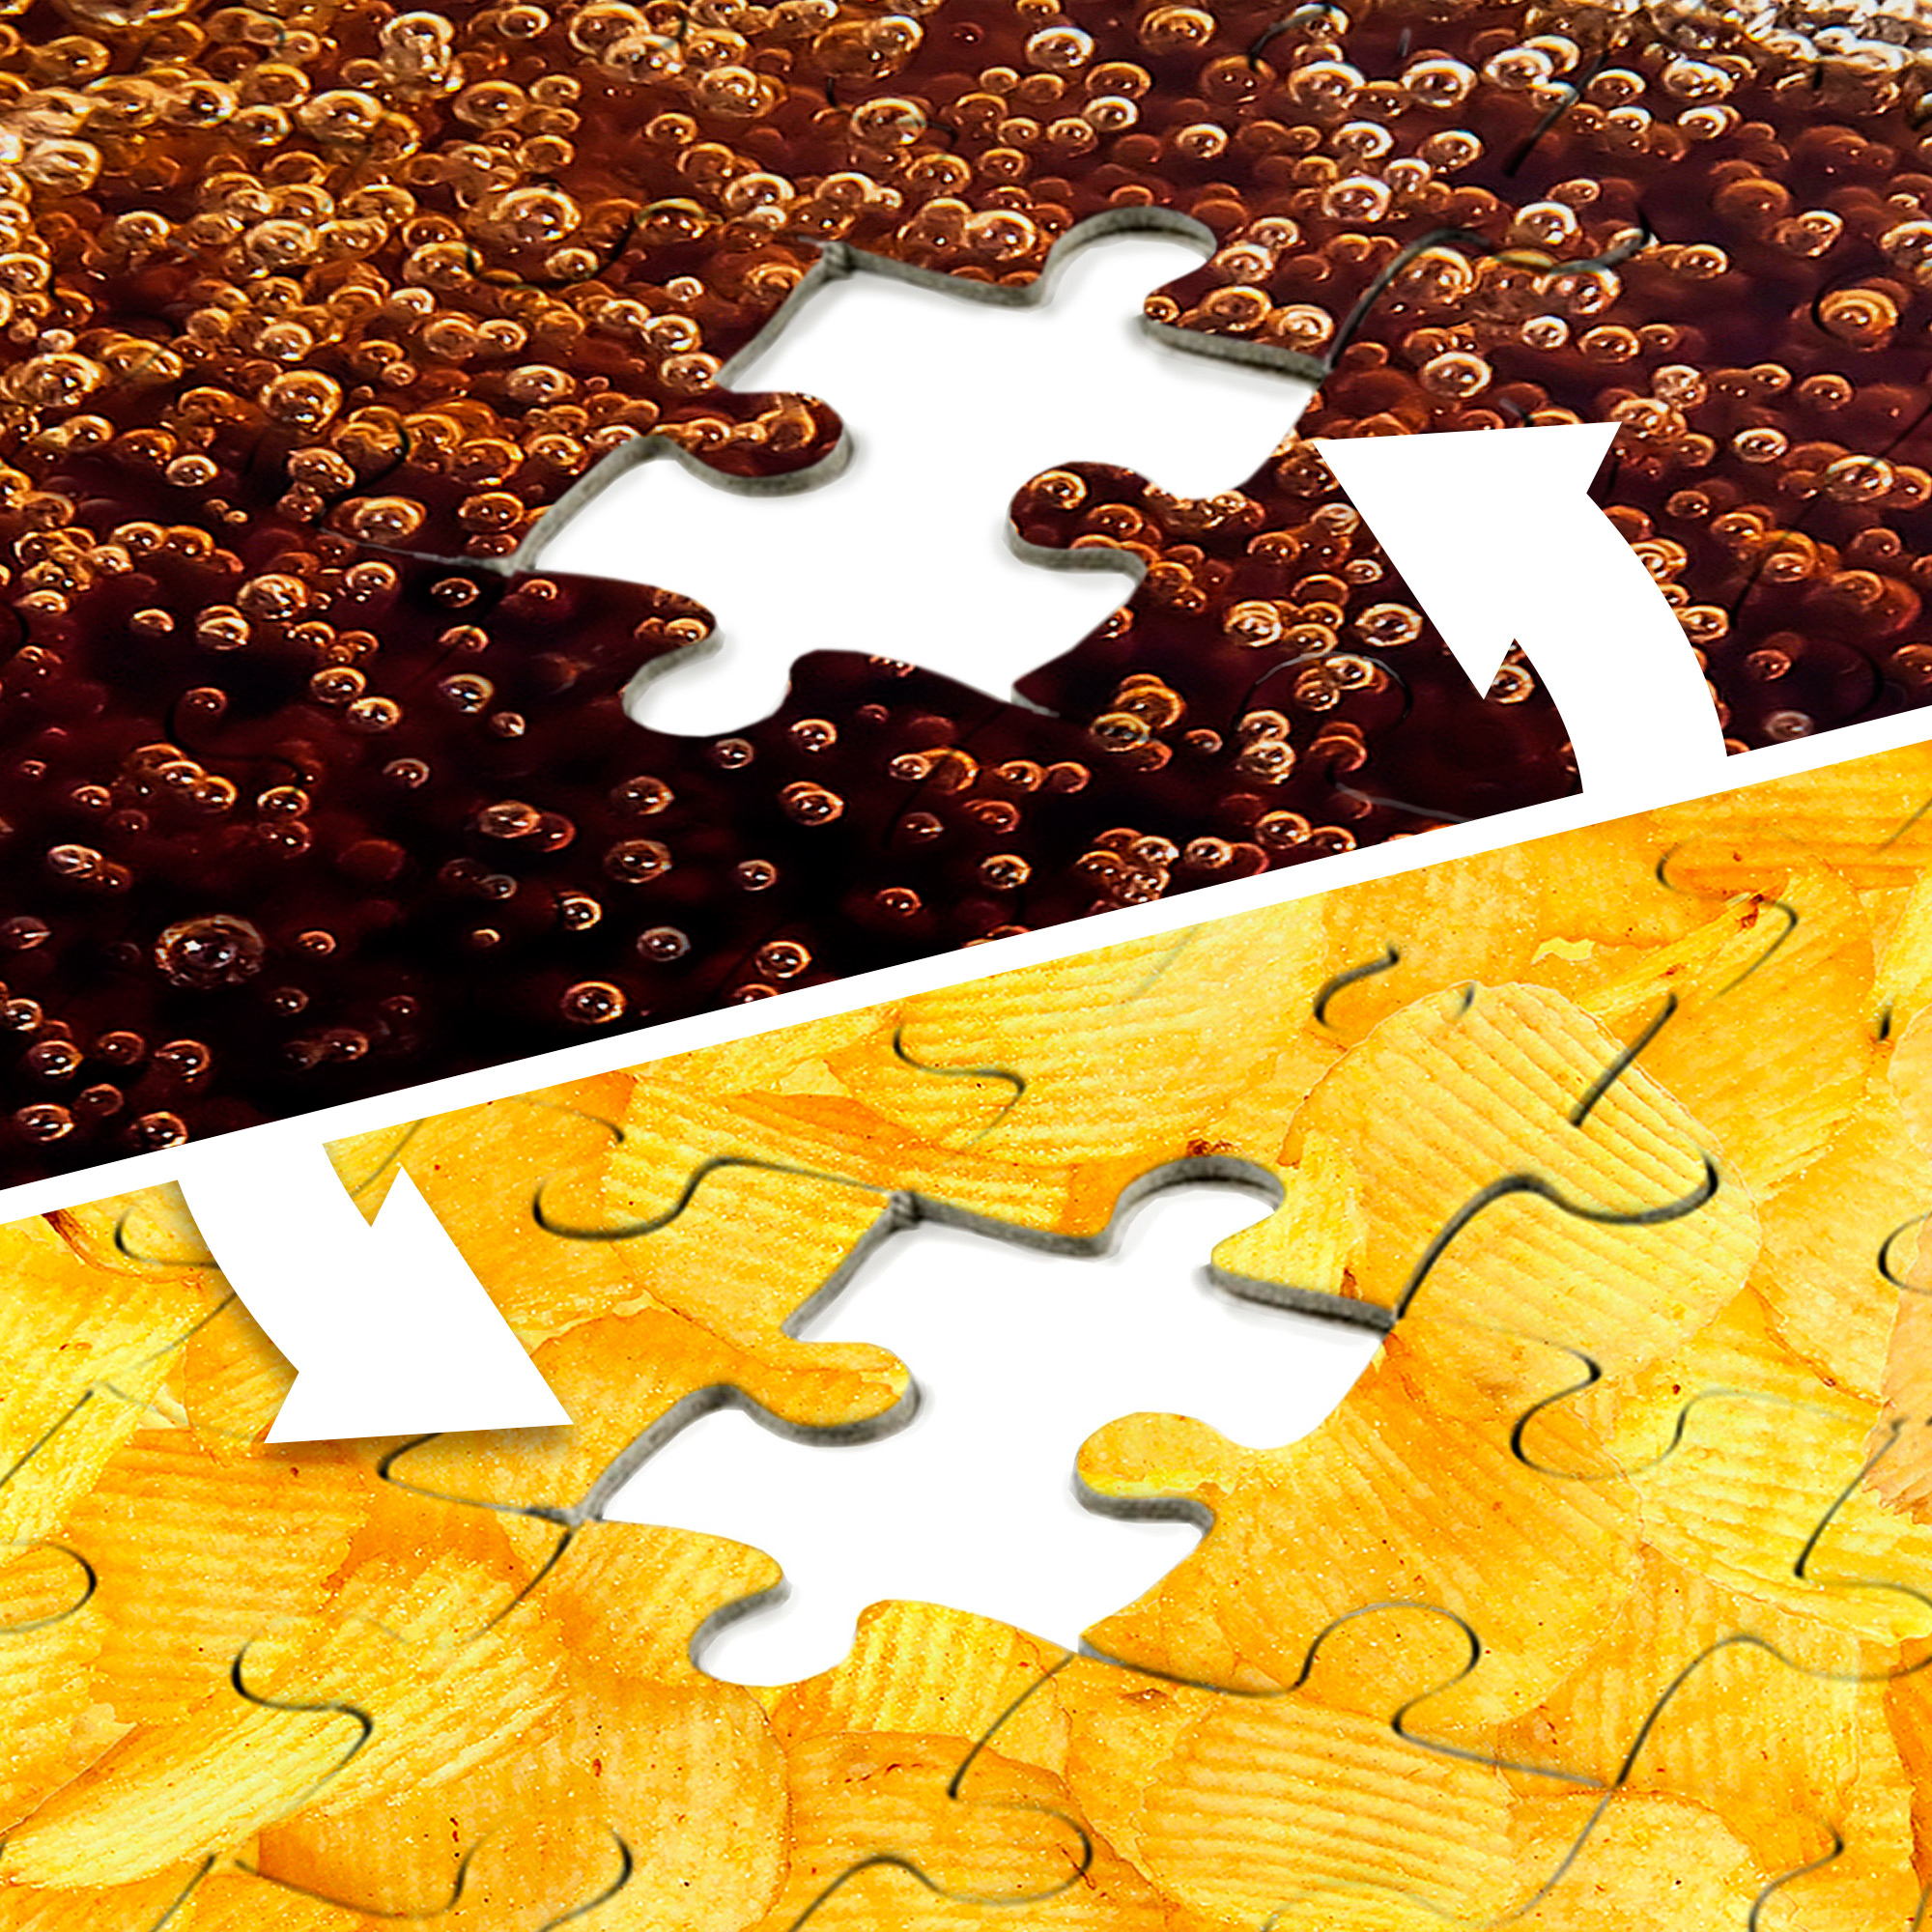 Das unlösbare Puzzle - Chips und Cola 3950 - 3